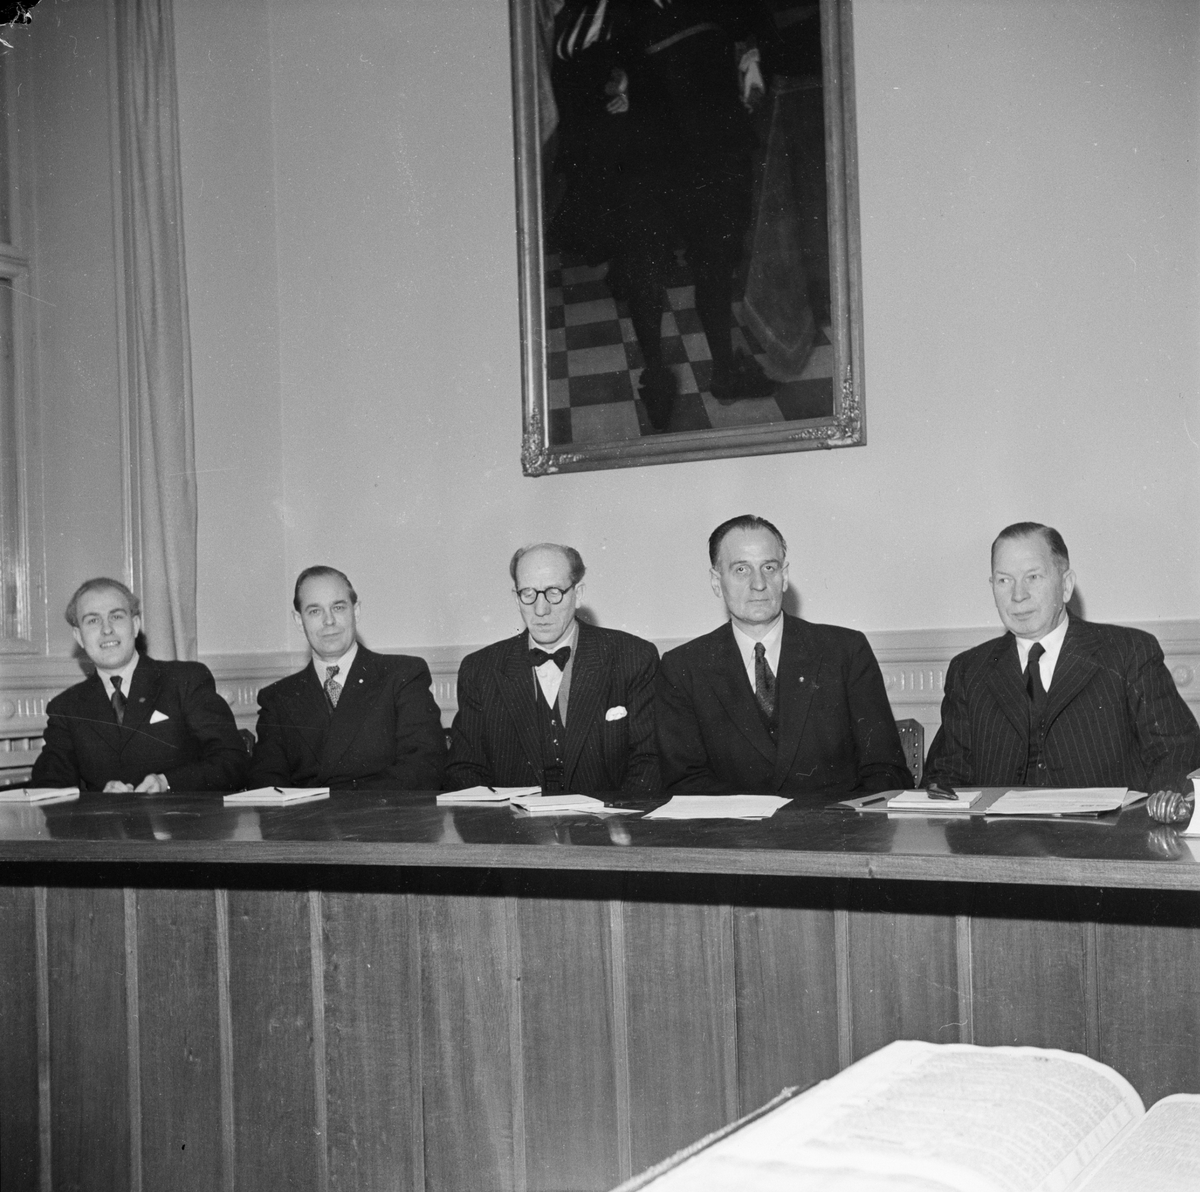 Rådhuset, nämndemän, Uppsala, januari 1948